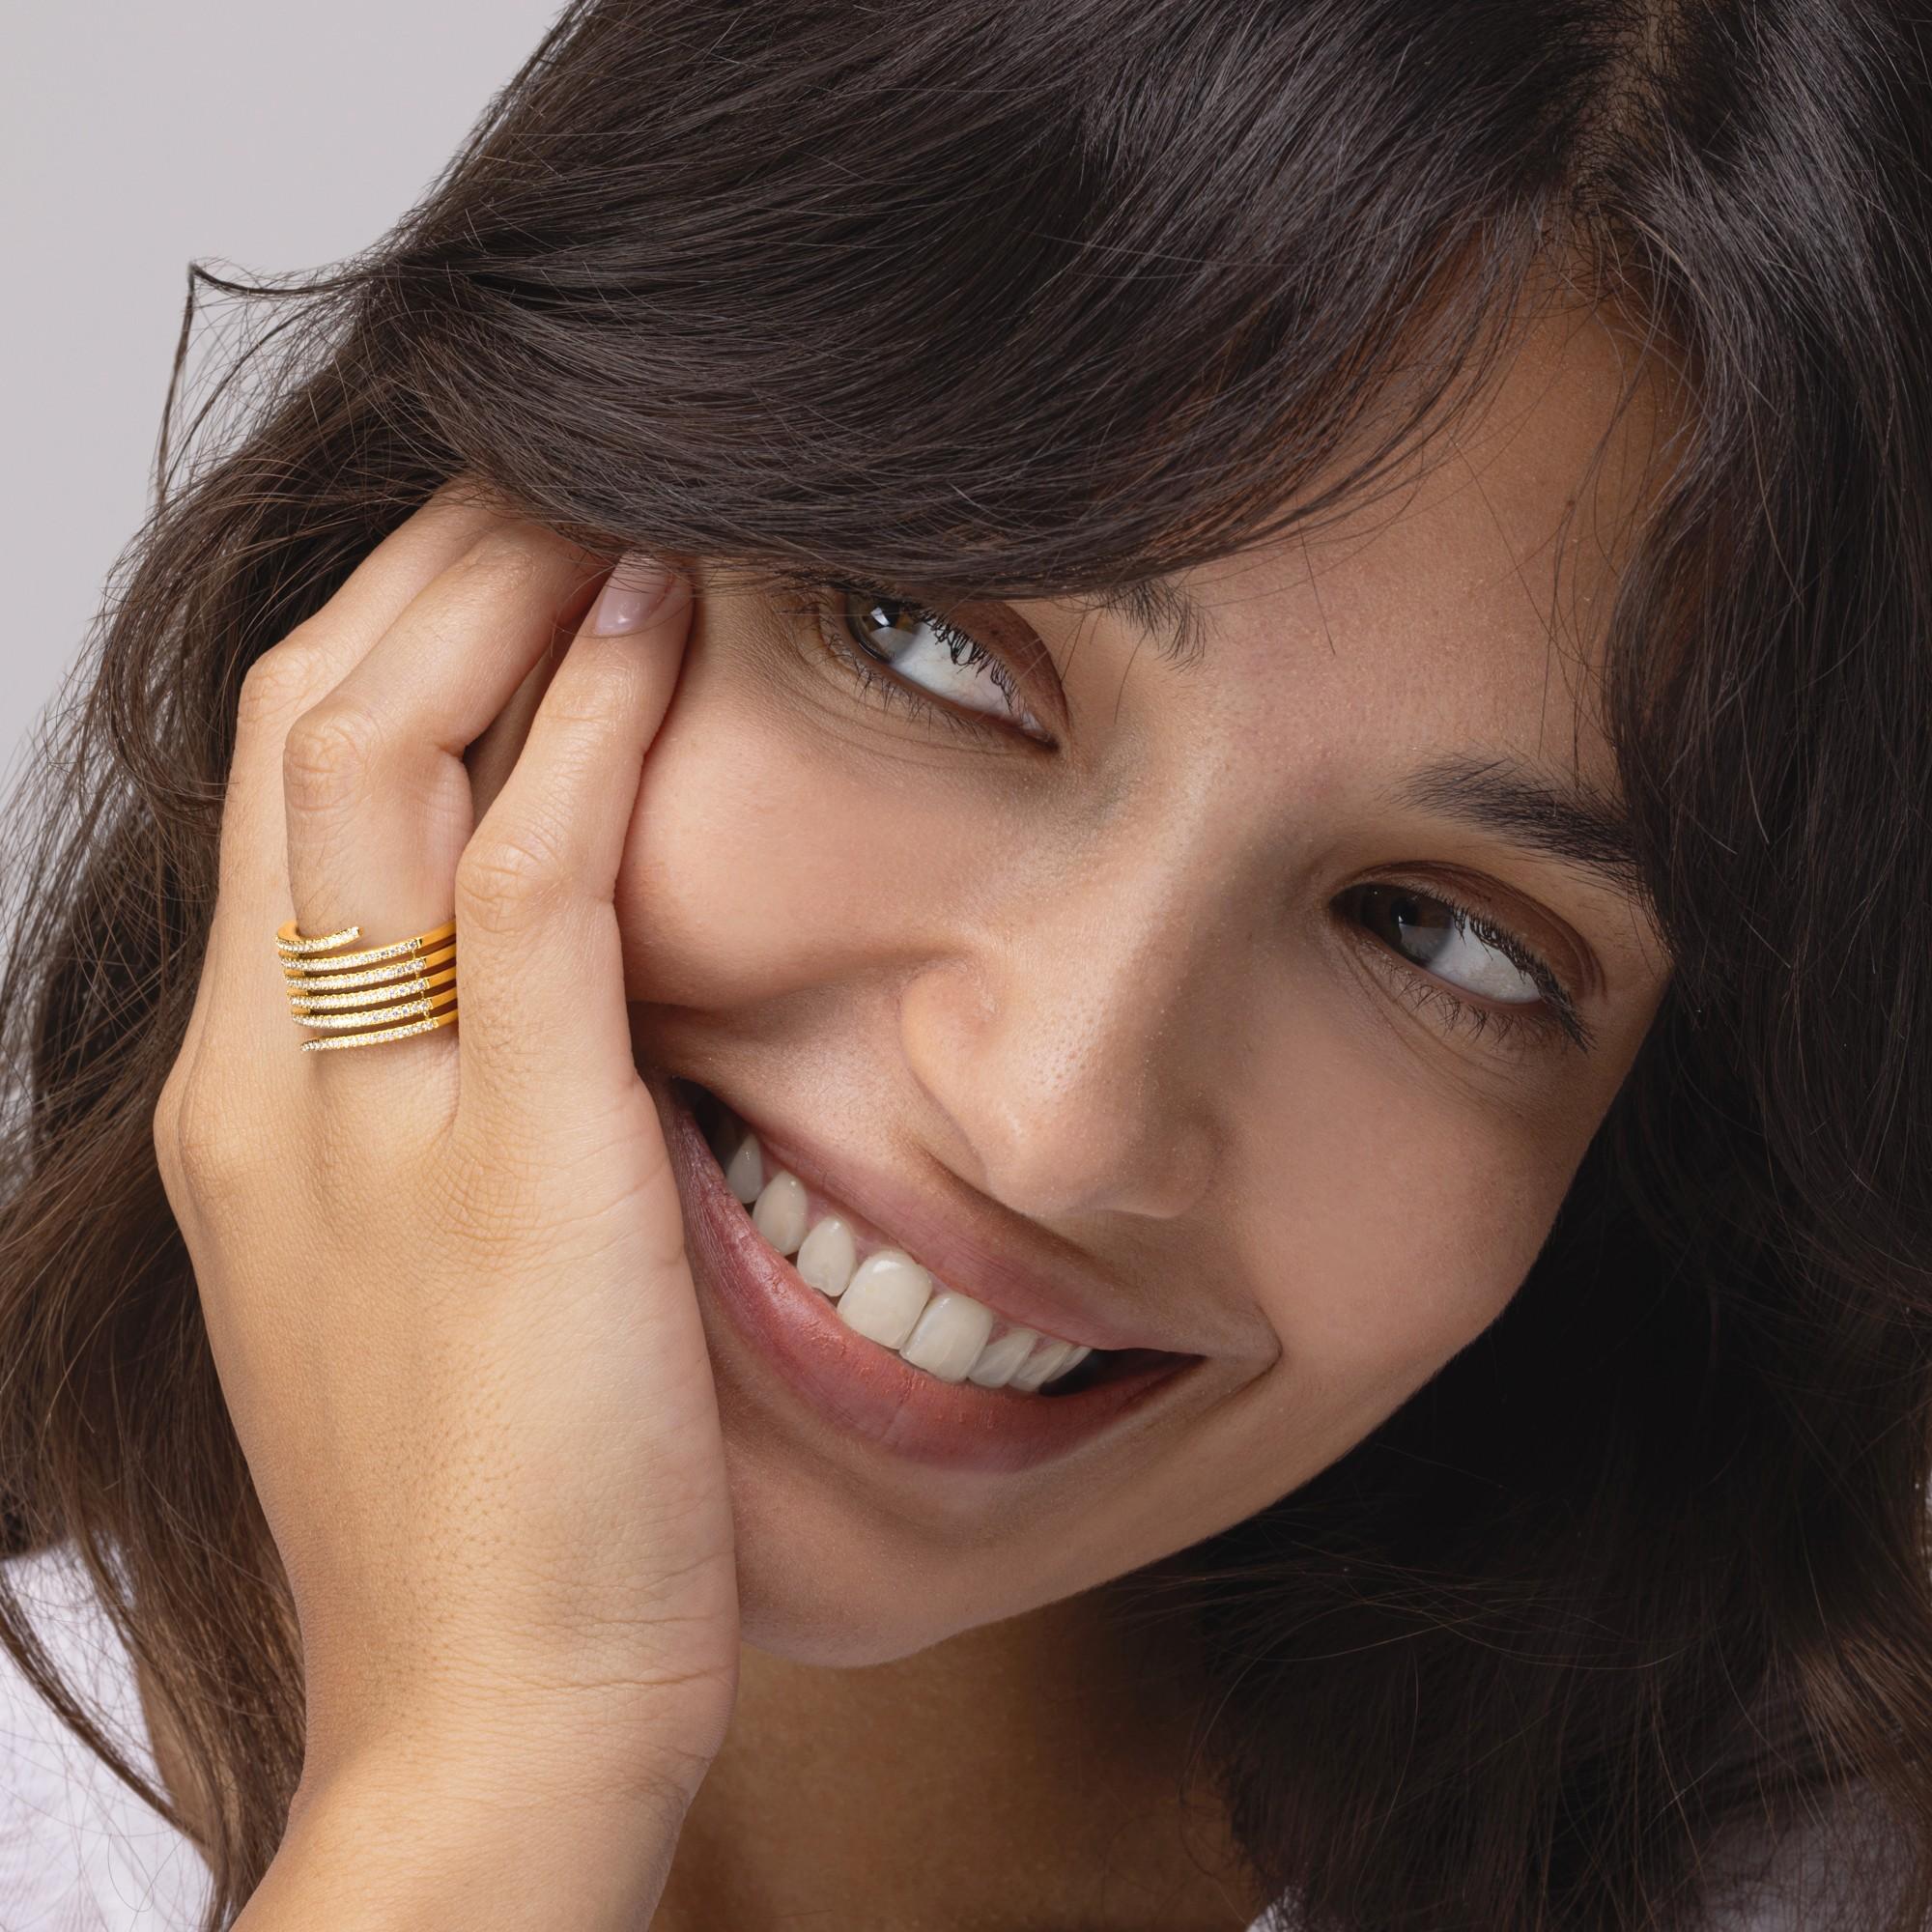 Alex Jona Design-Kollektion, handgefertigt in Italien, 18 Karat Gelbgold Spule Schlange Ringband, mit 0,48 Karat weiß rund geschliffenen Diamanten, FG Farbe, VVS Klarheit gesetzt.
Die Juwelen von Alex Jona zeichnen sich nicht nur durch ihr